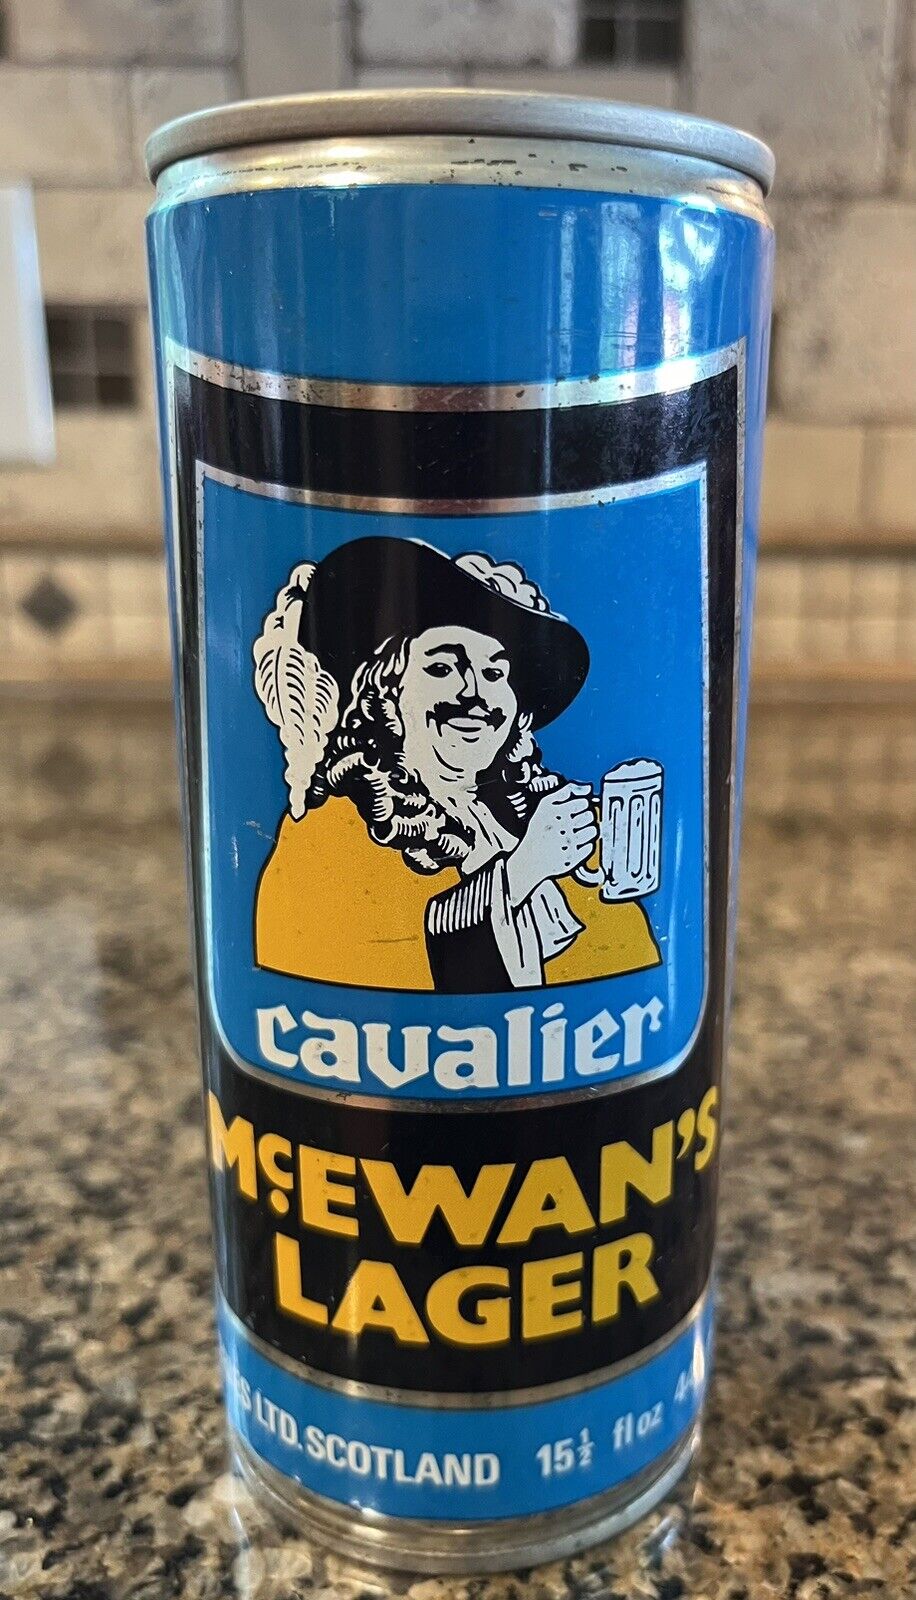 McEwan's Lager Cavalier Steel Seam Empt Beer Can Pull Tab Scotland Vintage 440ml